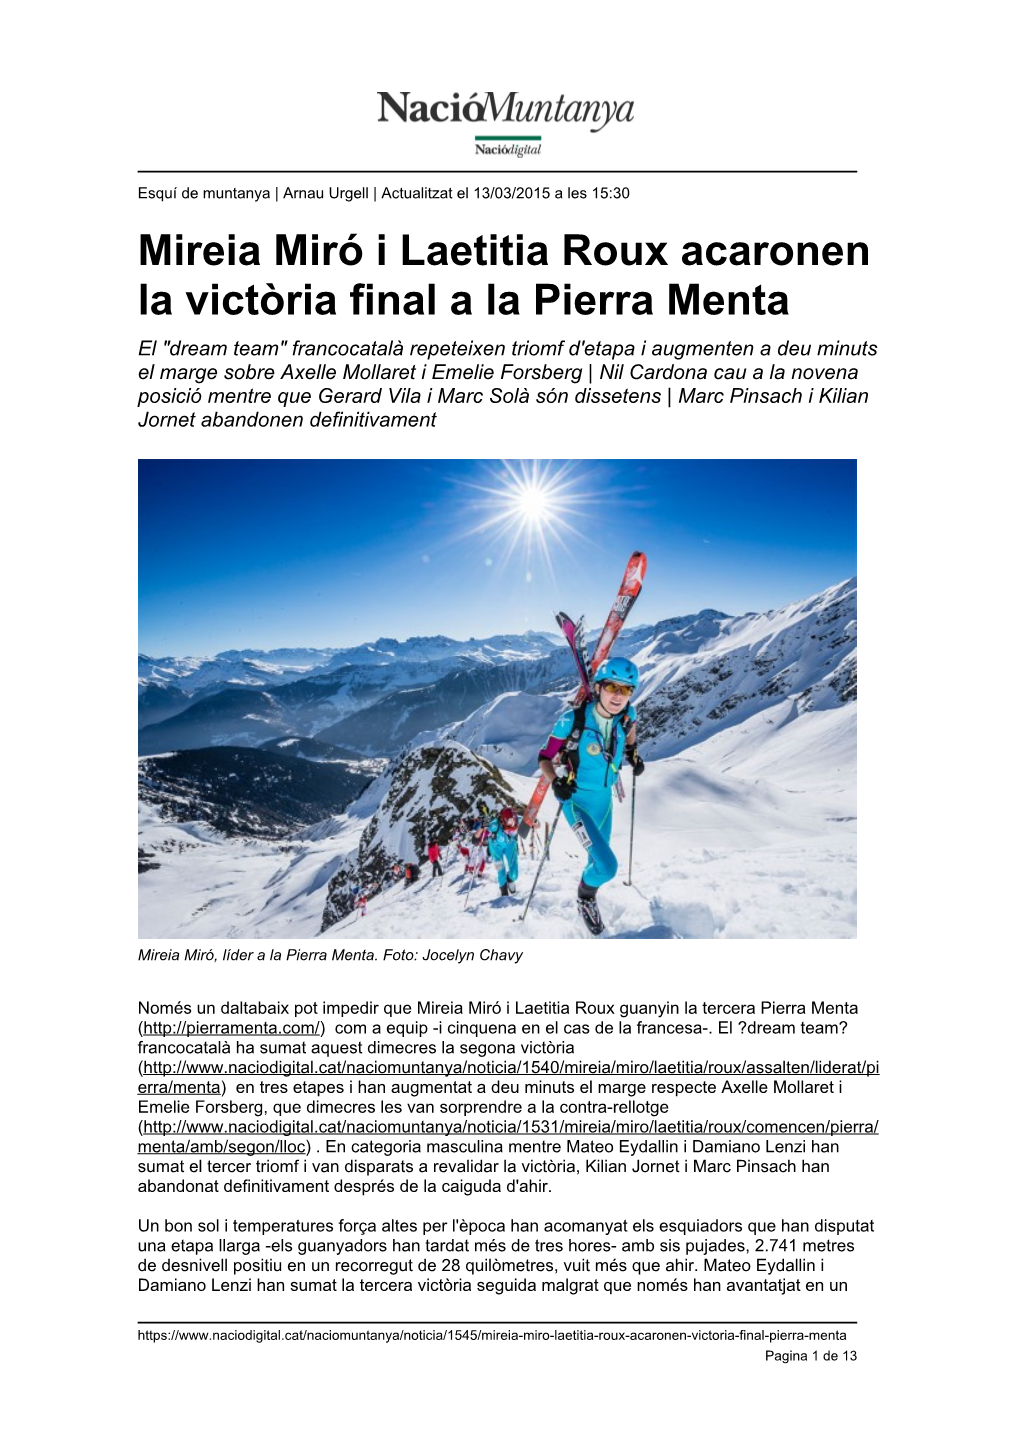 Mireia Miró I Laetitia Roux Acaronen La Victòria Final a La Pierra Menta